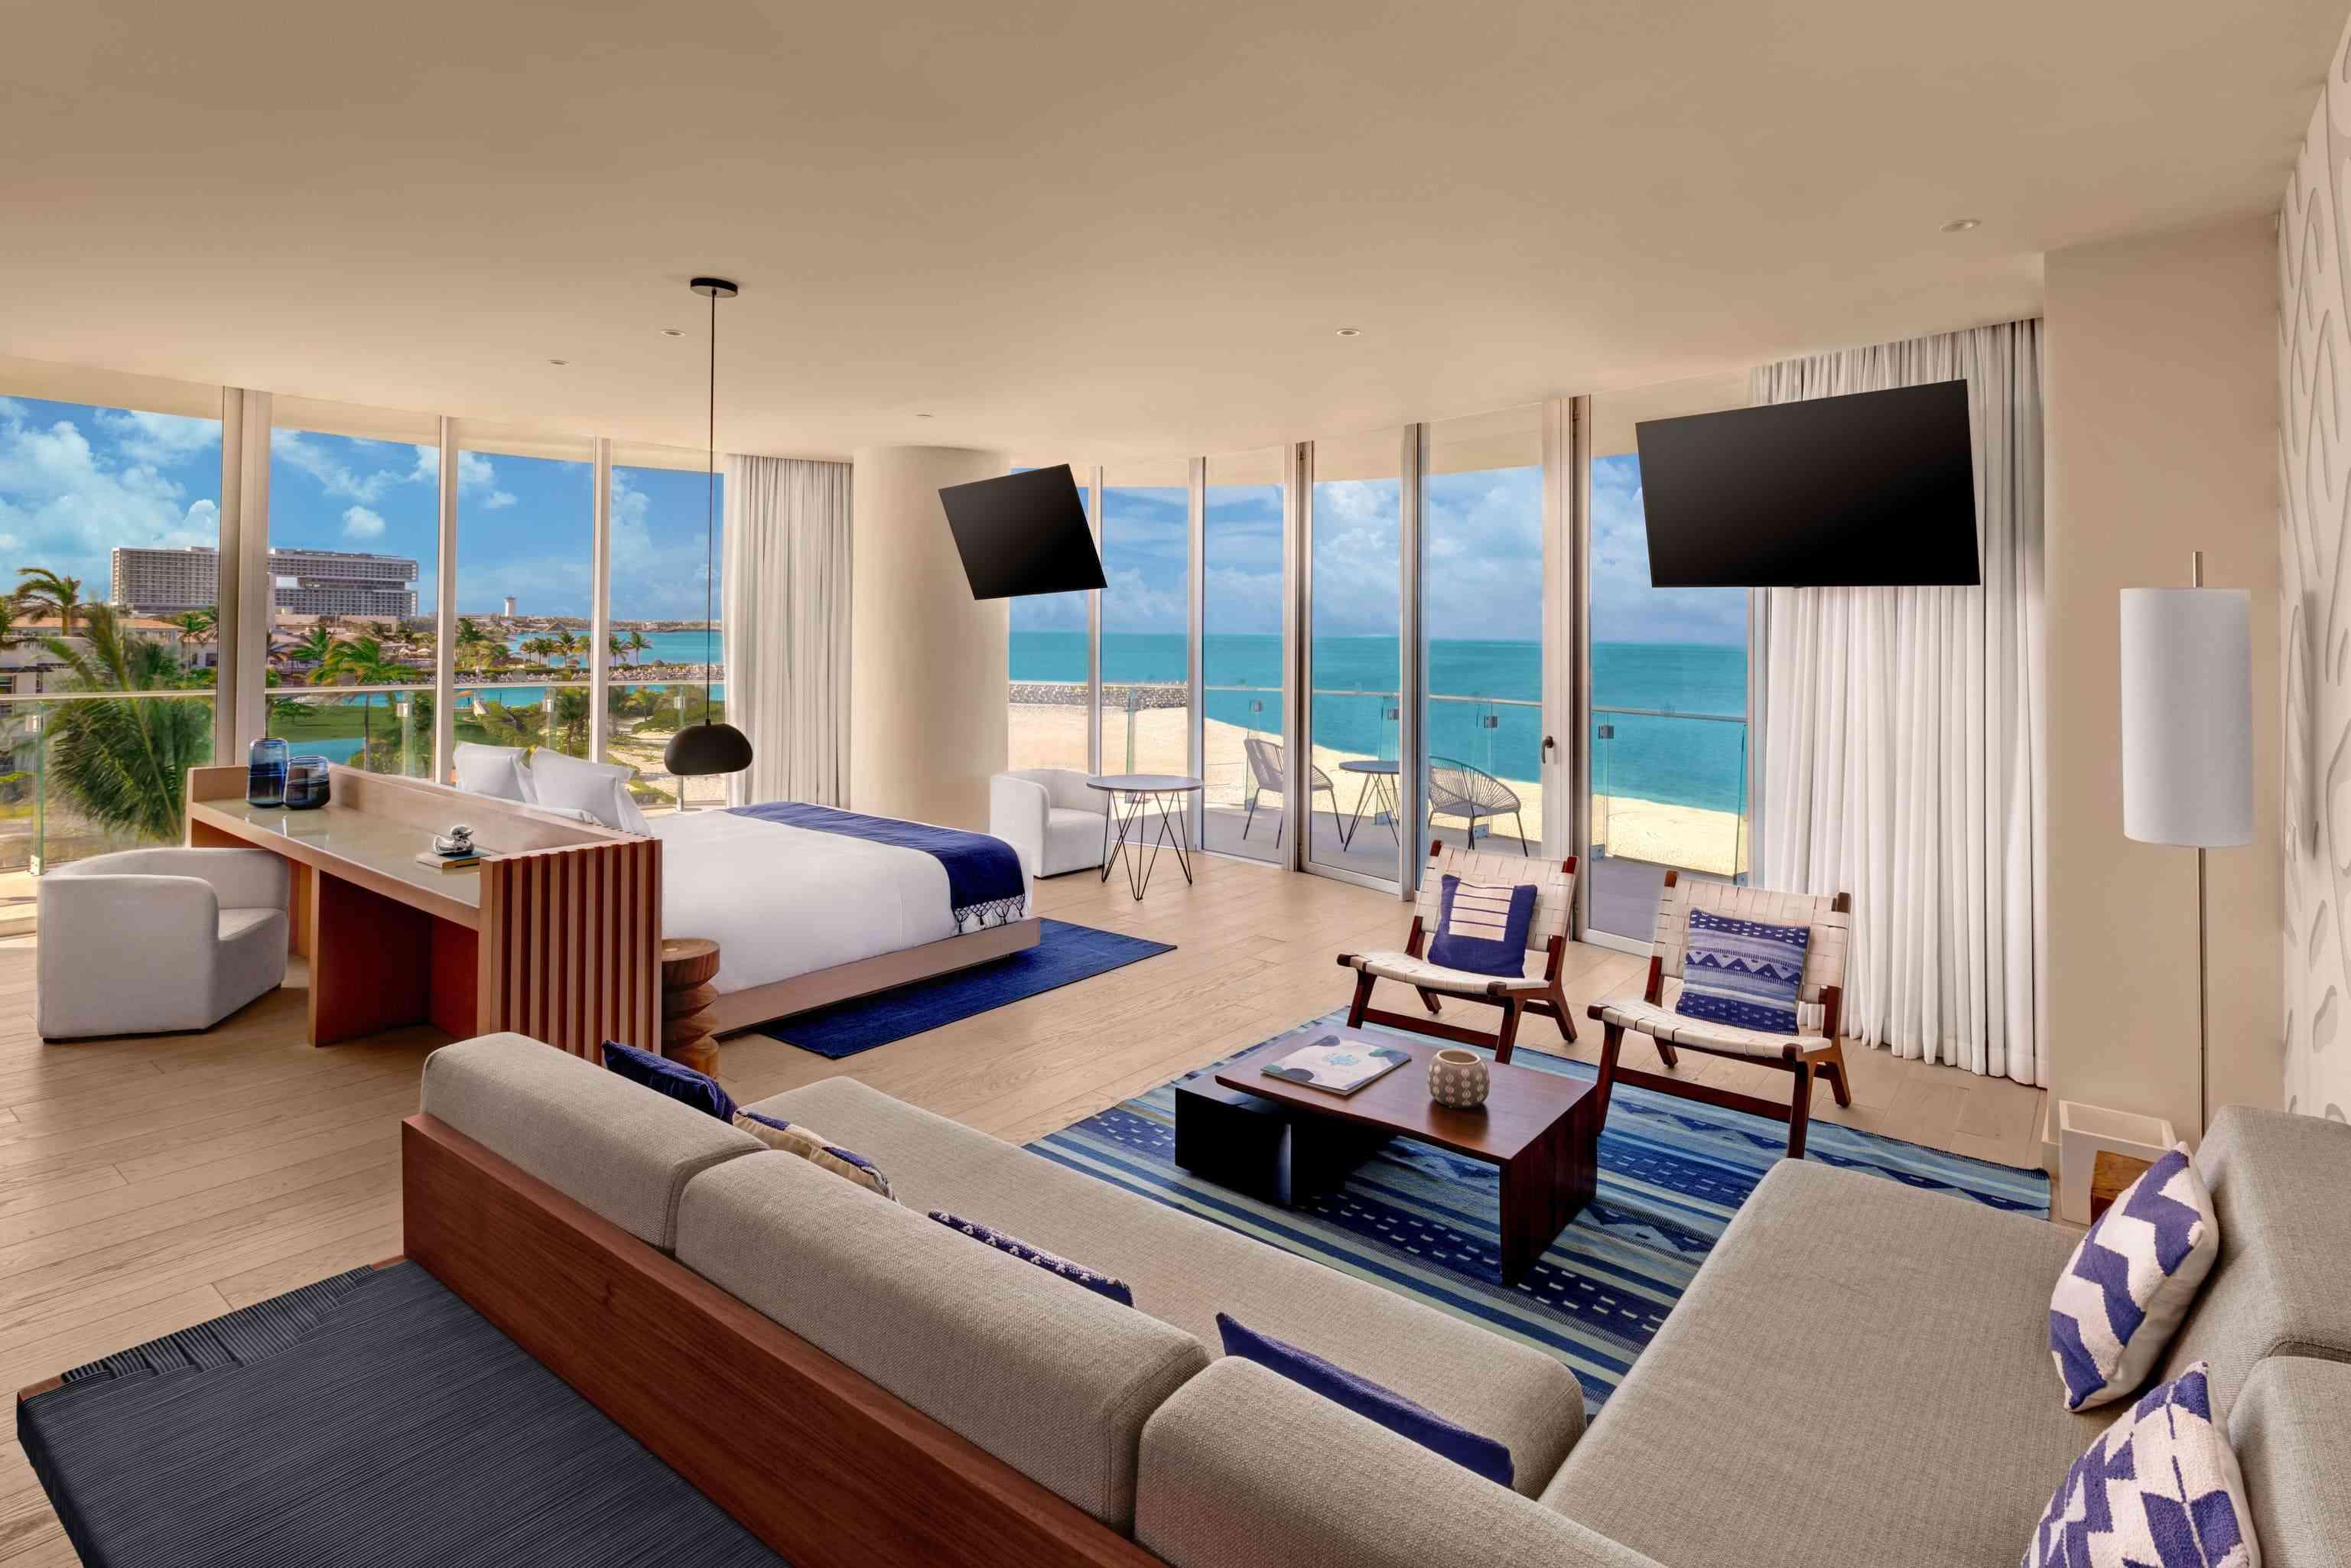 لقطة واسعة لجناح Premier Ocean Front بغرفة نوم واحدة والذي يتضمن مكتبًا ومنطقة جلوس كبيرة وجهازي تلفزيون وسرير وشرفة مطلة على المحيط